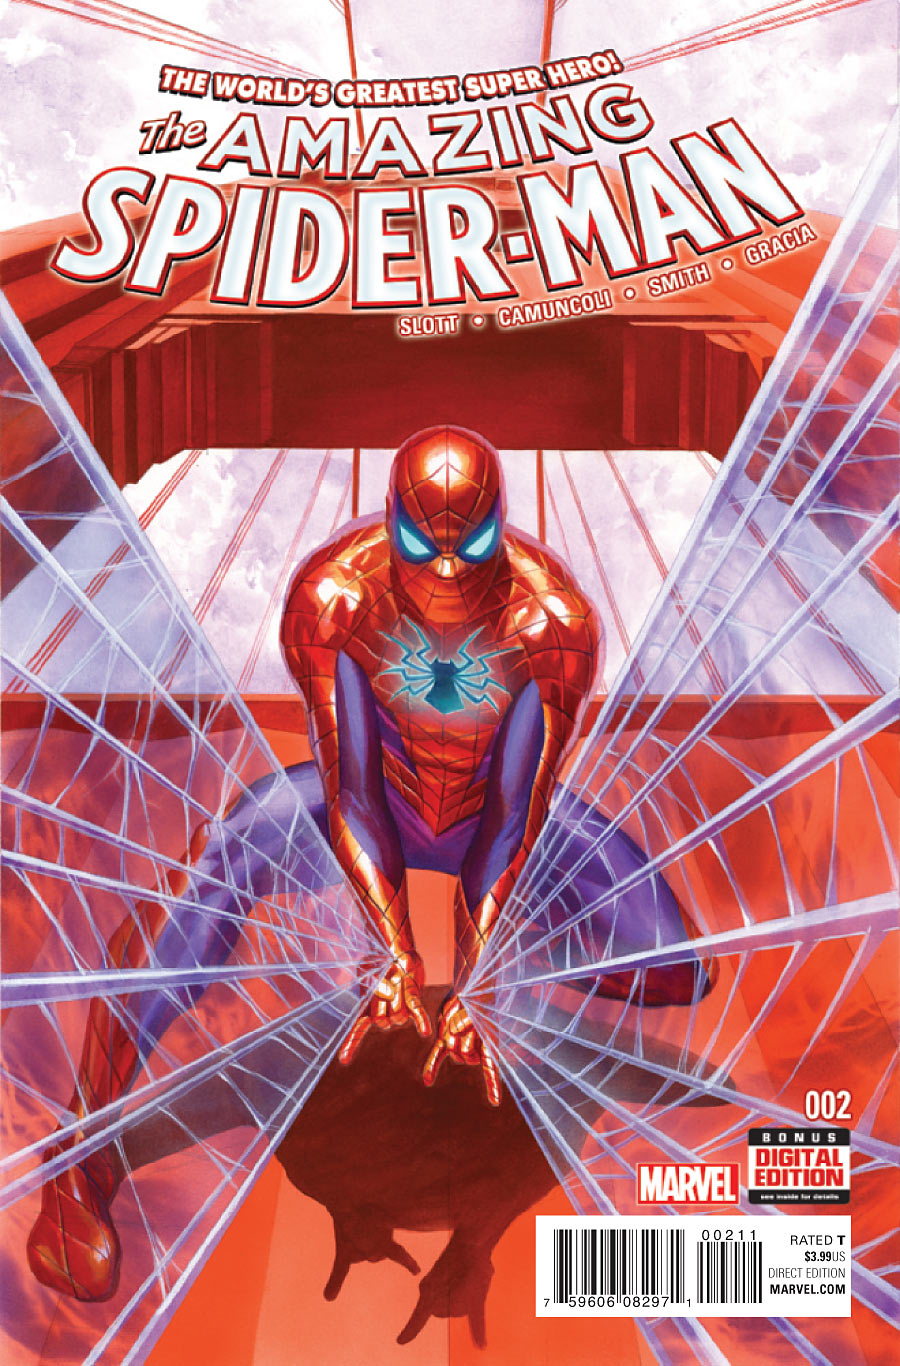 descargue el increible single spider man spiderman